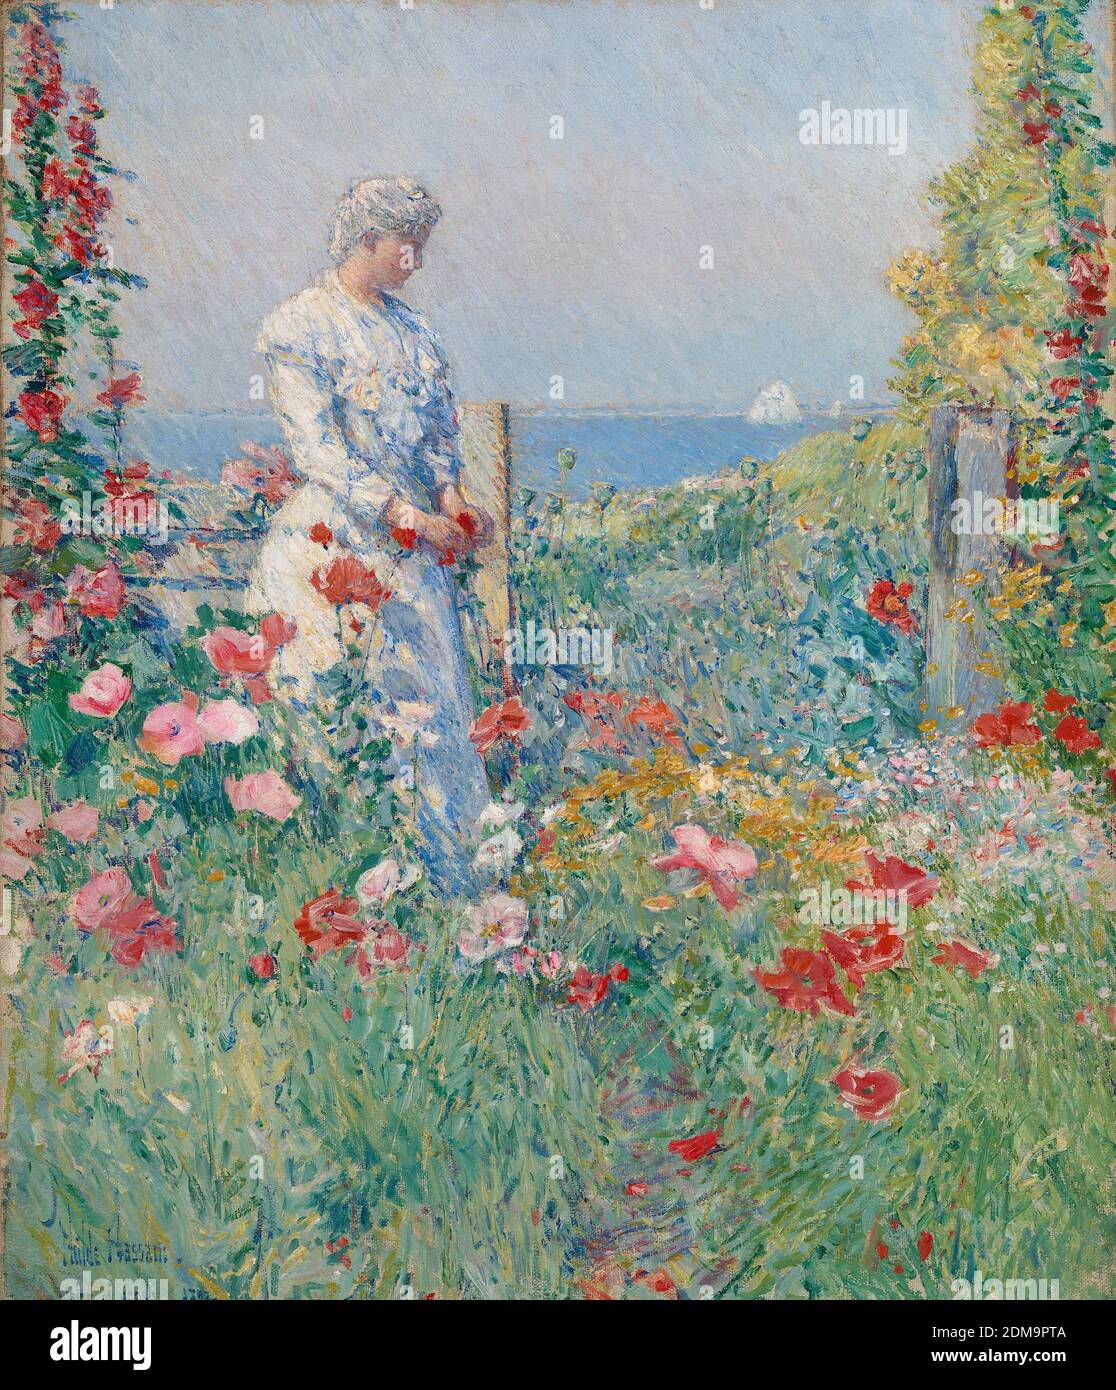 Dans le jardin (Celia Thaxter dans son jardin) 1892 peinture impressionniste américaine par Childe Hassam - très haut résolution et qualité d'image Banque D'Images